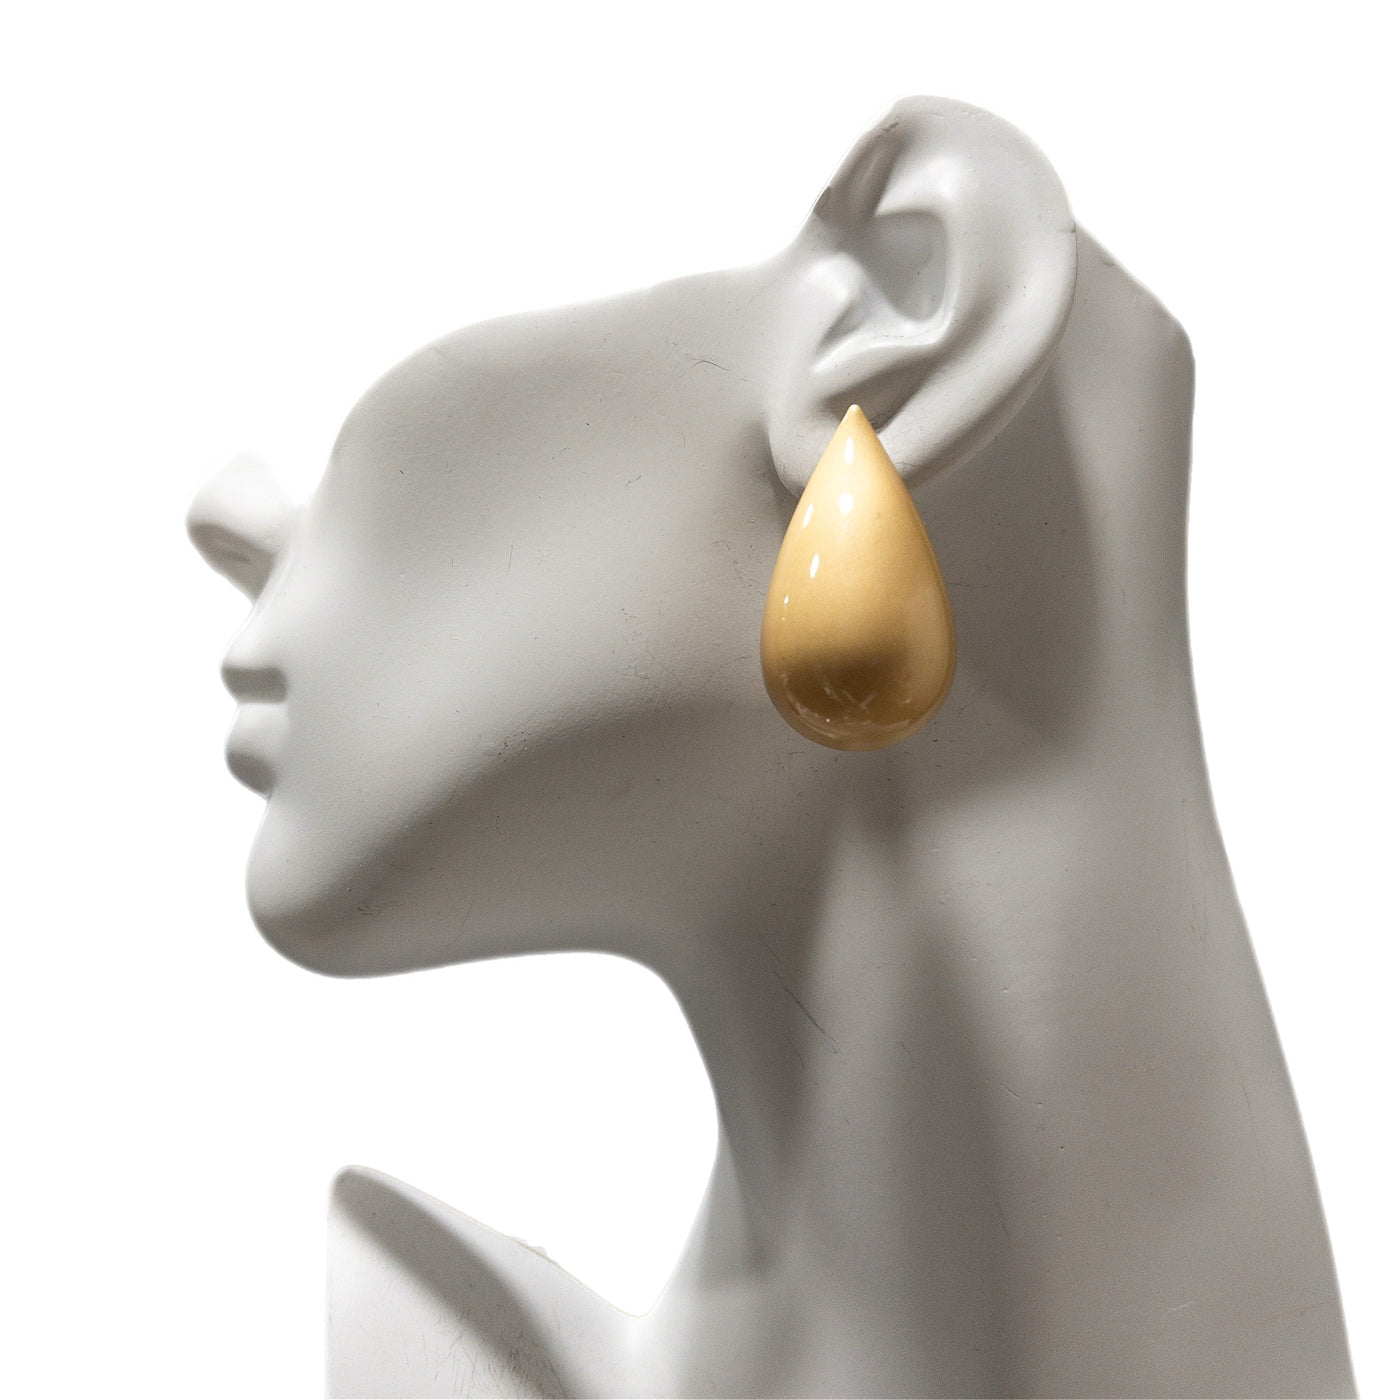 Nisuo Gold teardrop stud earrings